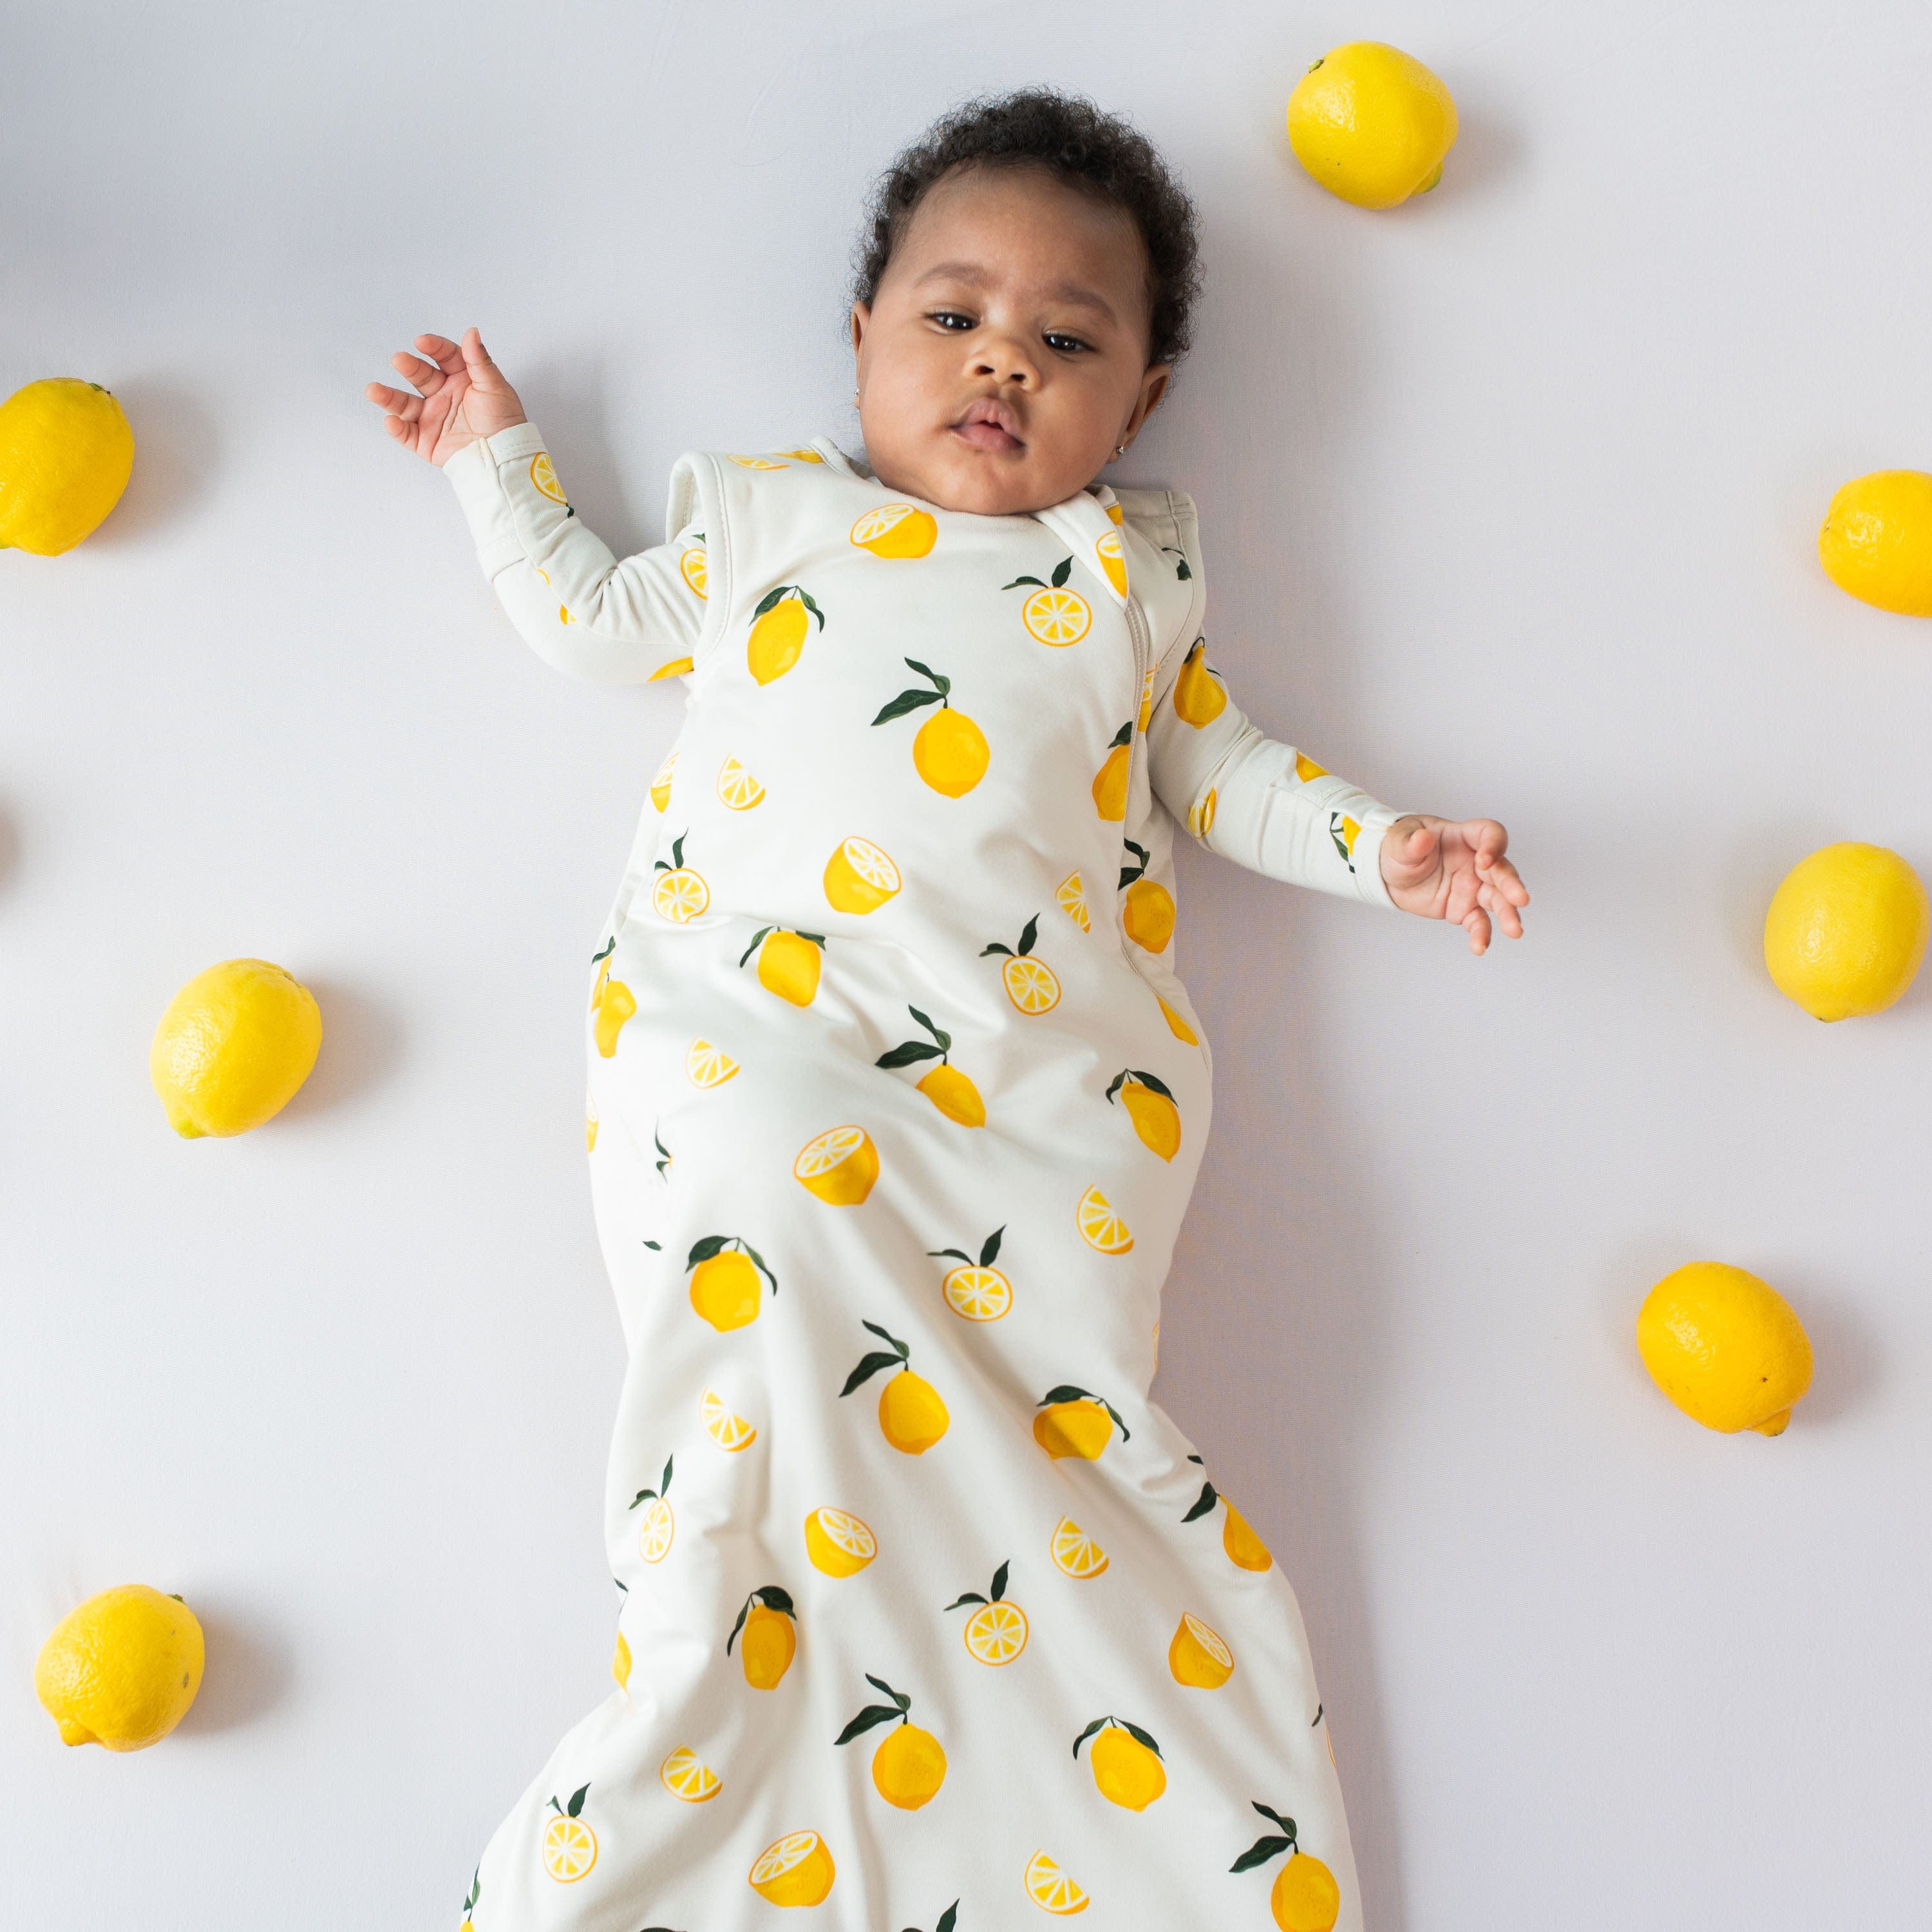 Infant wearing Kyte Baby Sleep Bag in Lemon 1.0